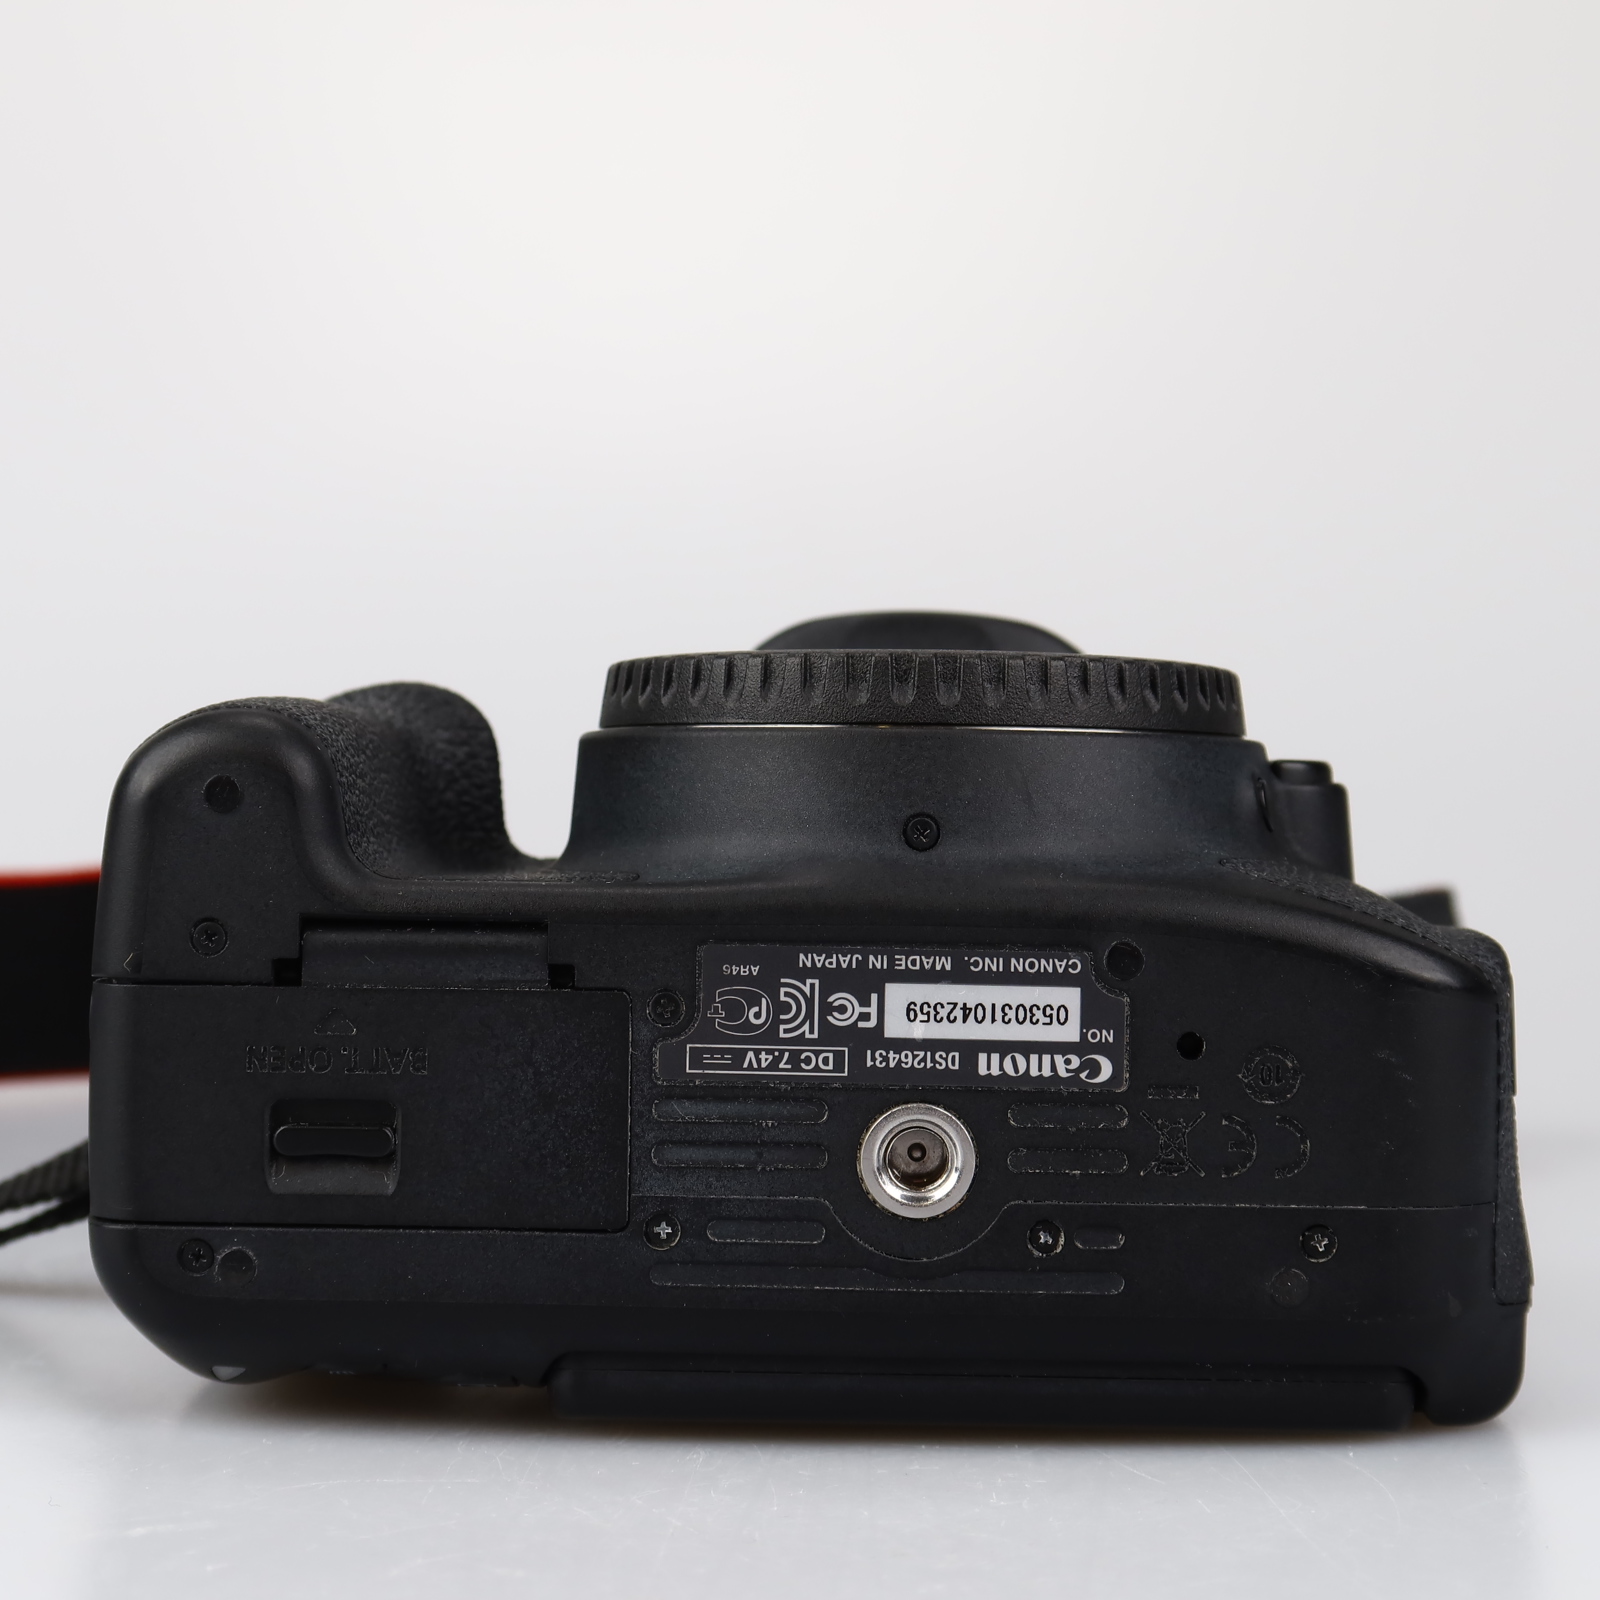 Canon EOS 700D runko (SC: 52410) (käytetty)